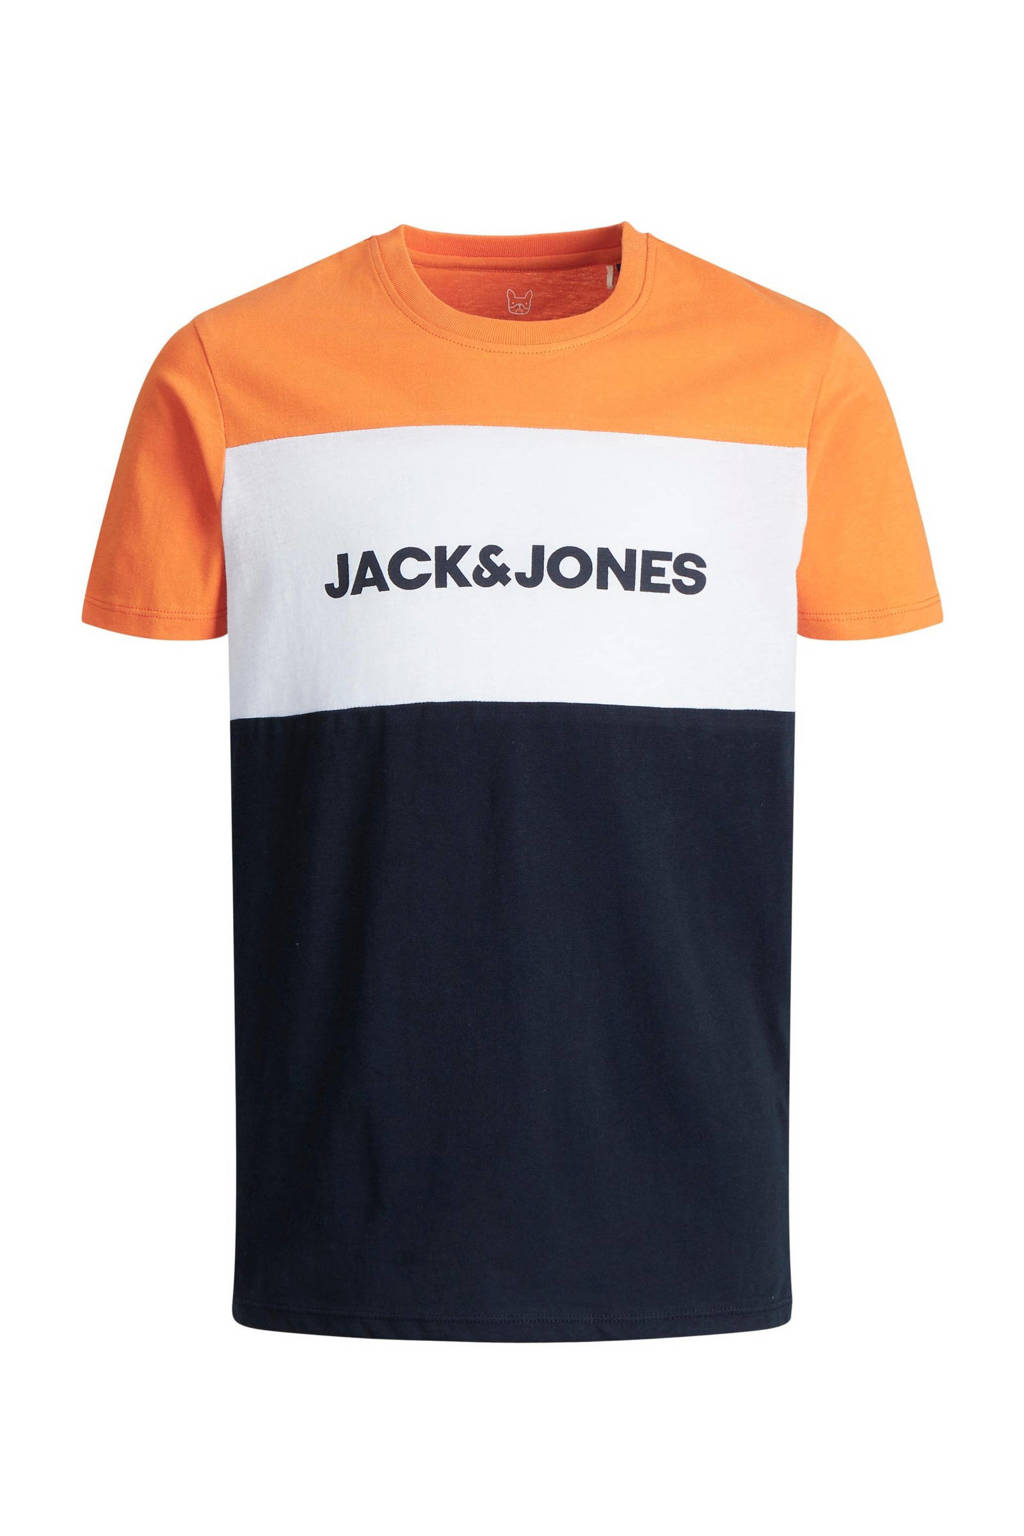 Oranje, wit en donkerblauwe jongens JACK & JONES JUNIOR T-shirt van katoen met logo dessin, korte mouwen en ronde hals